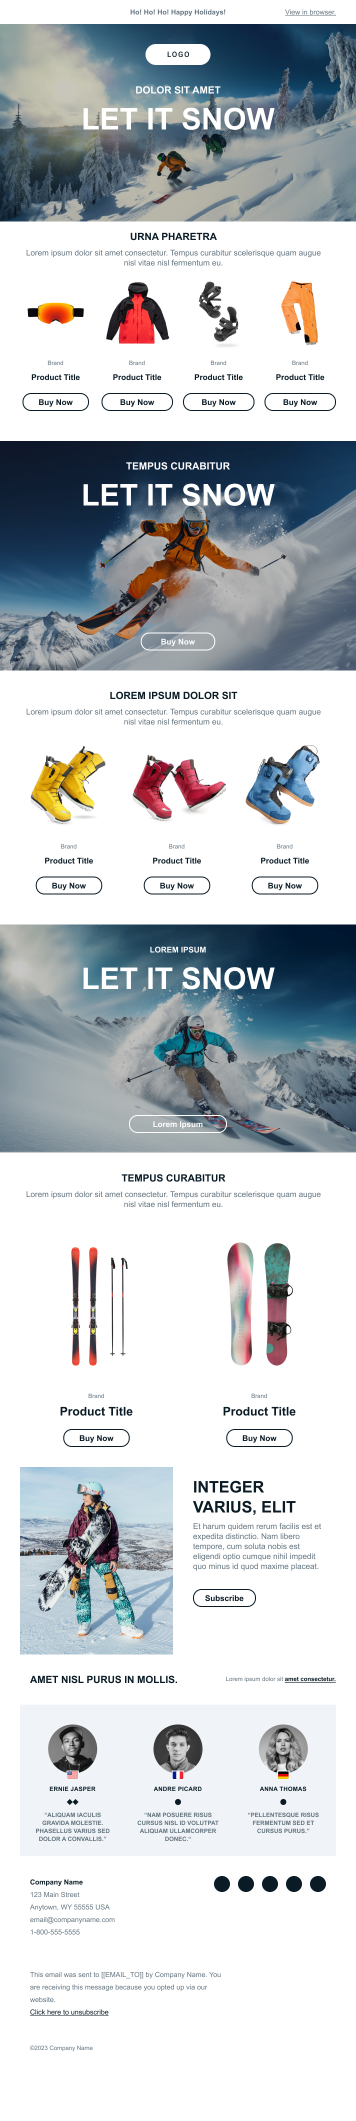 Capture d’écran du modèle de newsletter Let it Snow